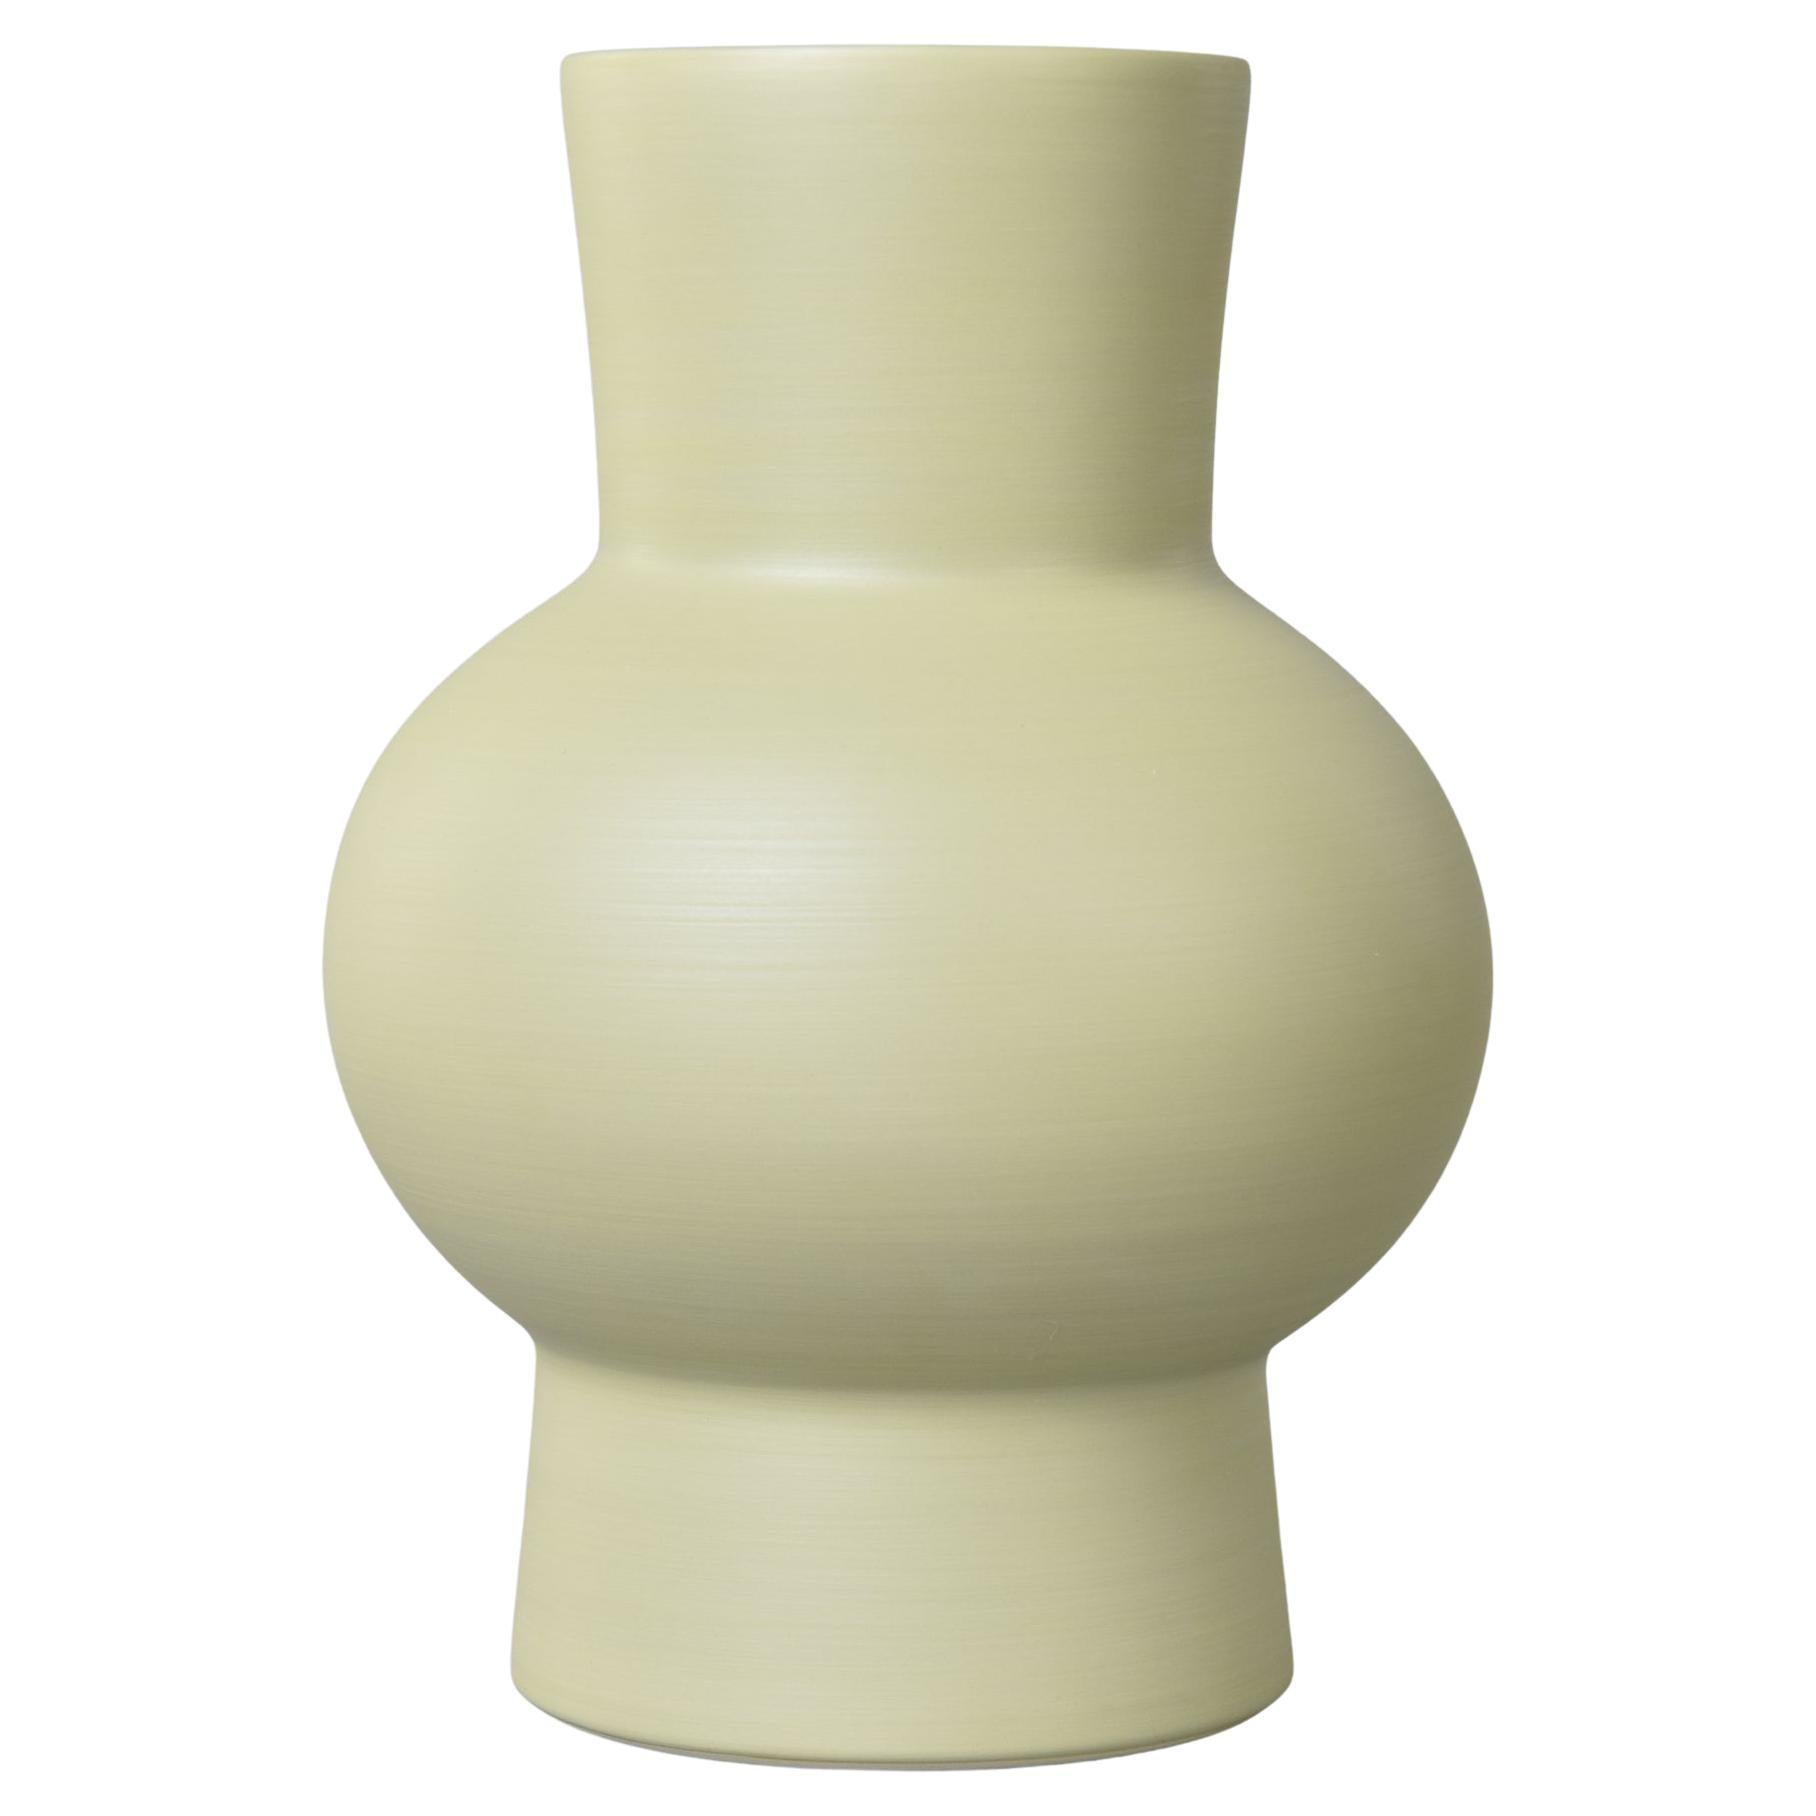 Rina Menardi Royal Princess Vase in Light Pistachio For Sale